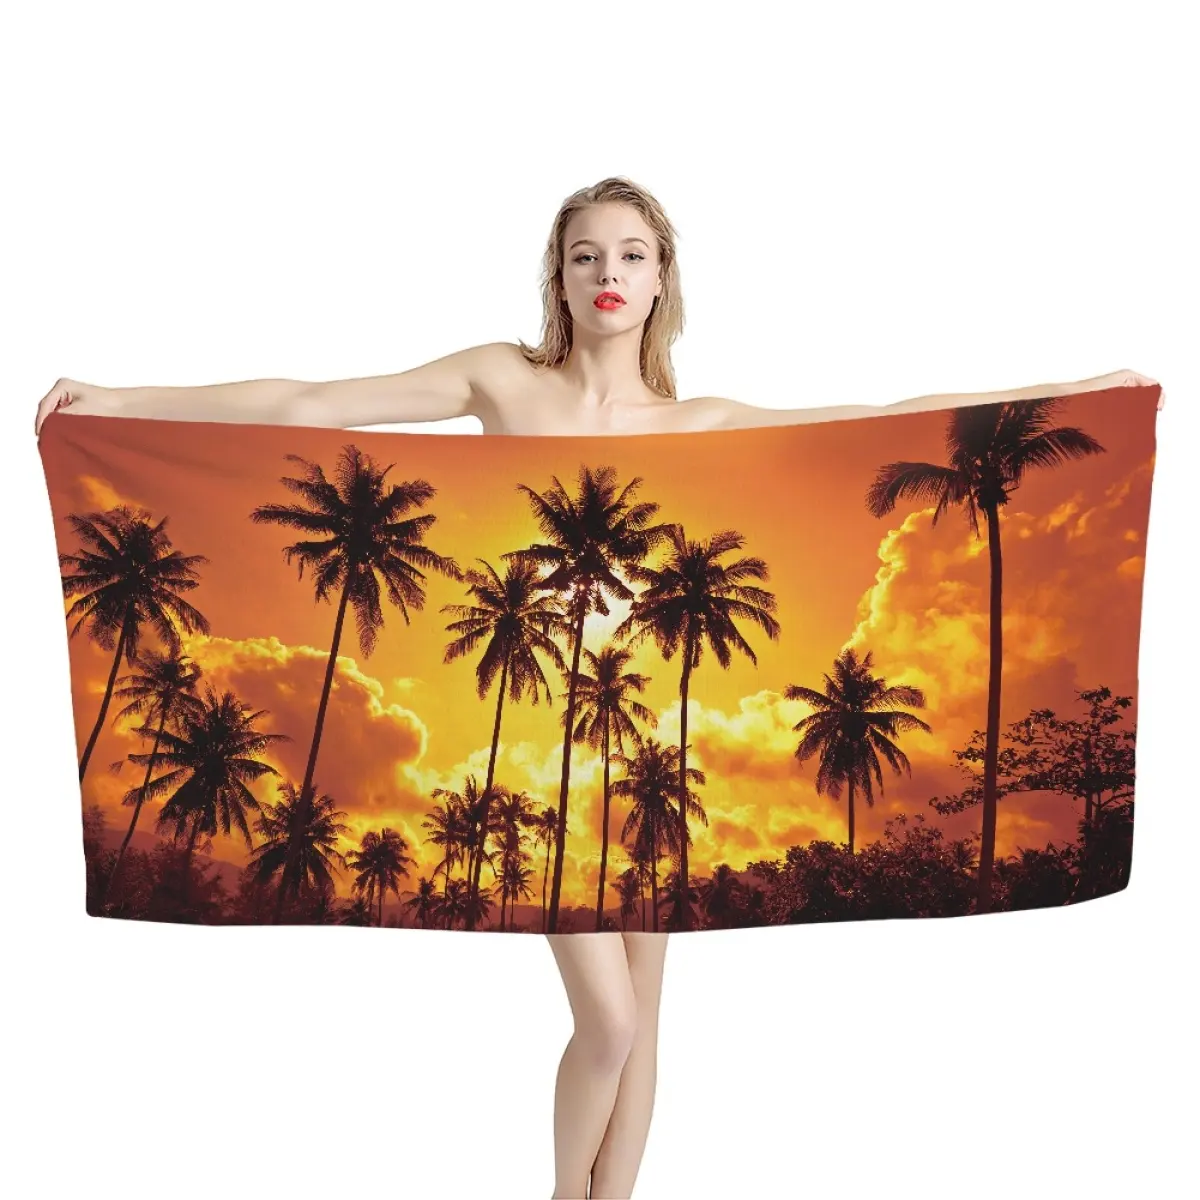 Yetişkin seksi kız banyo havlusu polinezya kumaş havlu kumaş desenli baskı talep üzerine yüksek emici yumuşak havlu